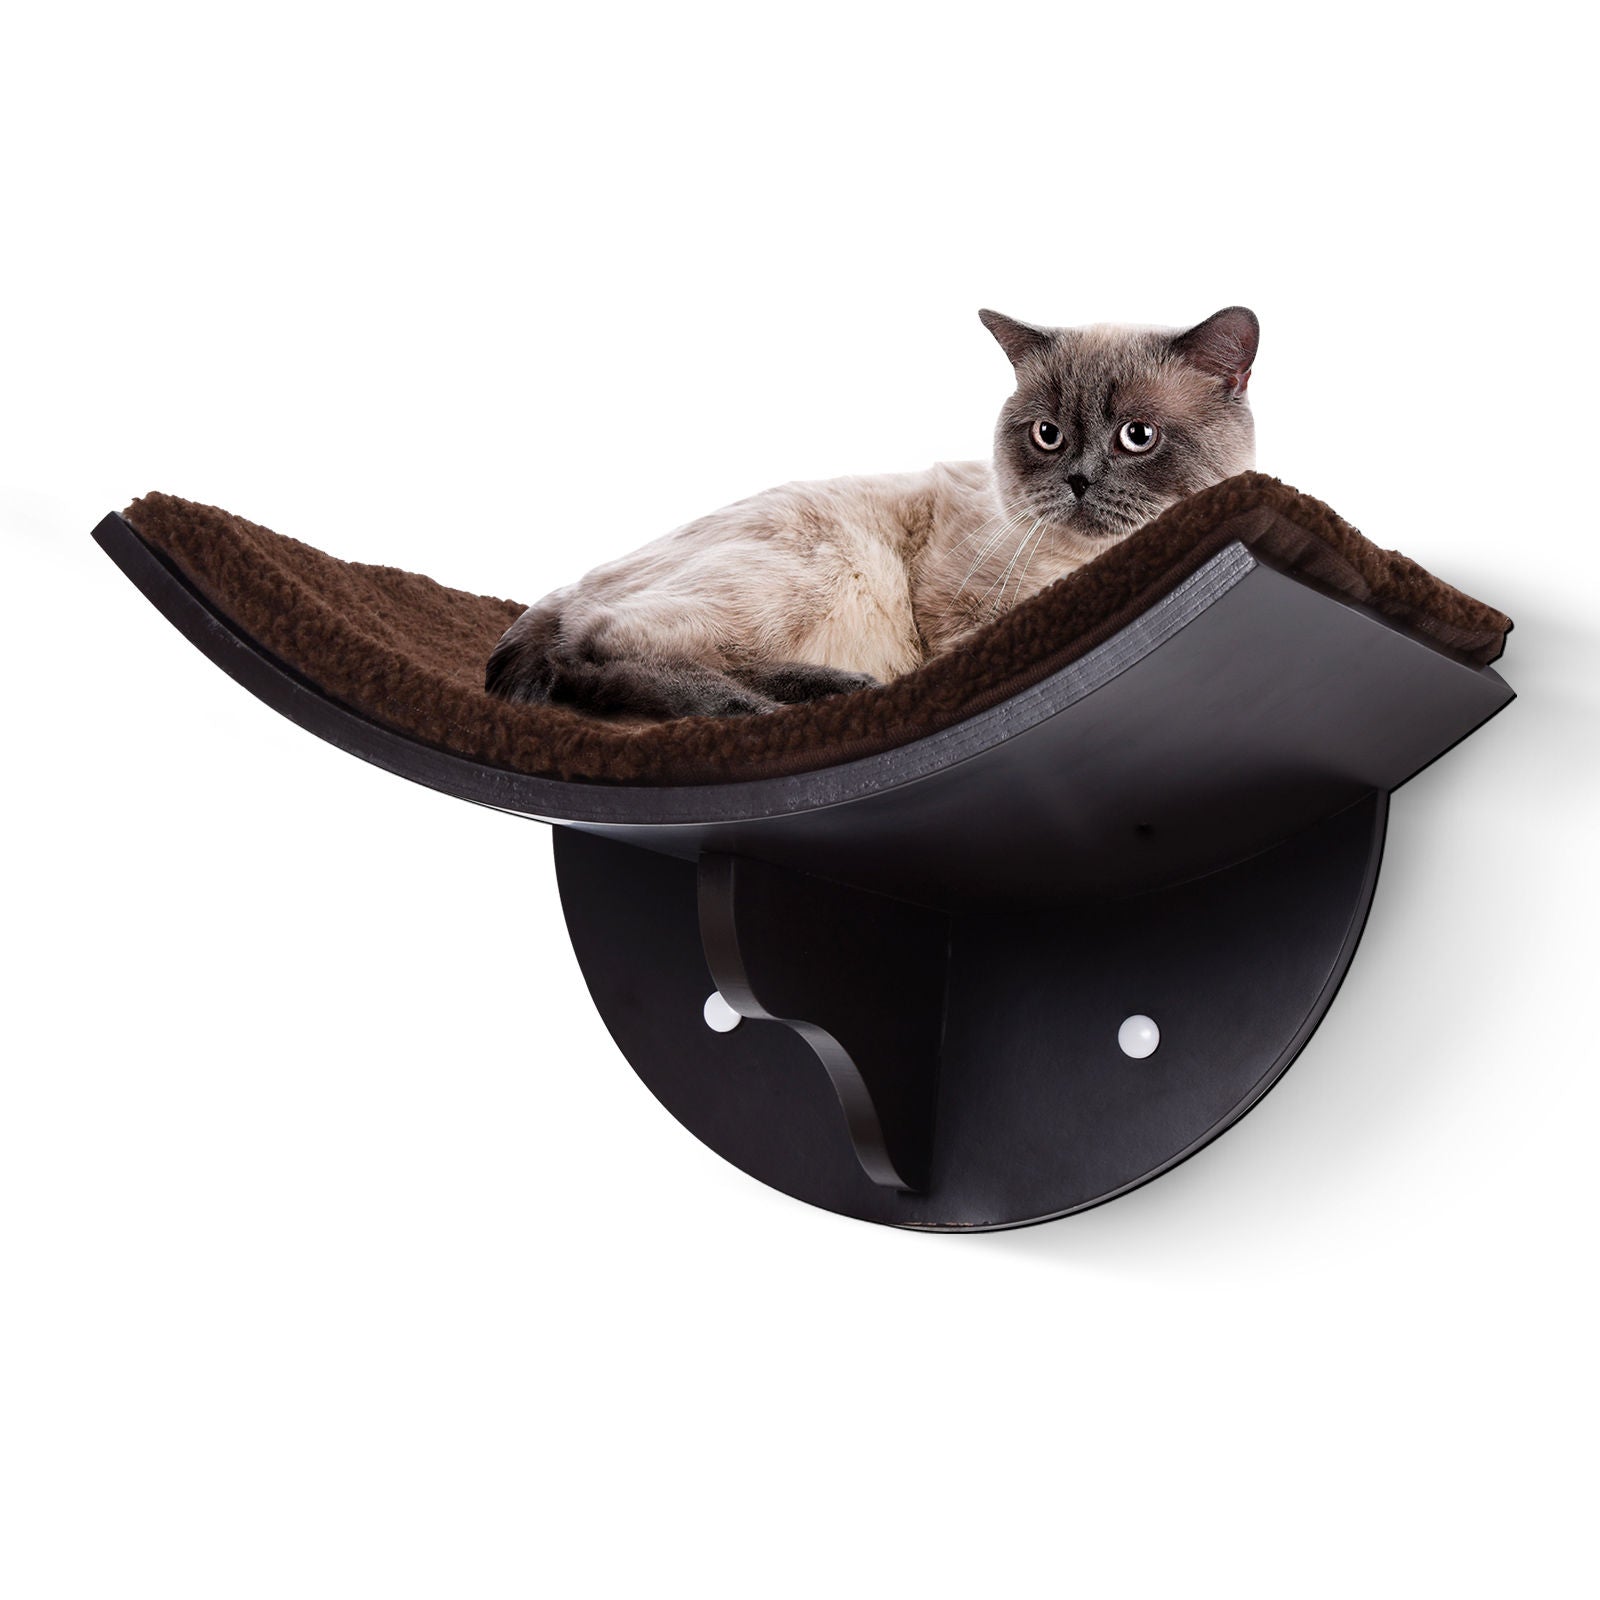 Nancy's Aston Kattenligstoel Kattenwandligstoel Kattenbed Kattenplank Pluche wandkussen MDF